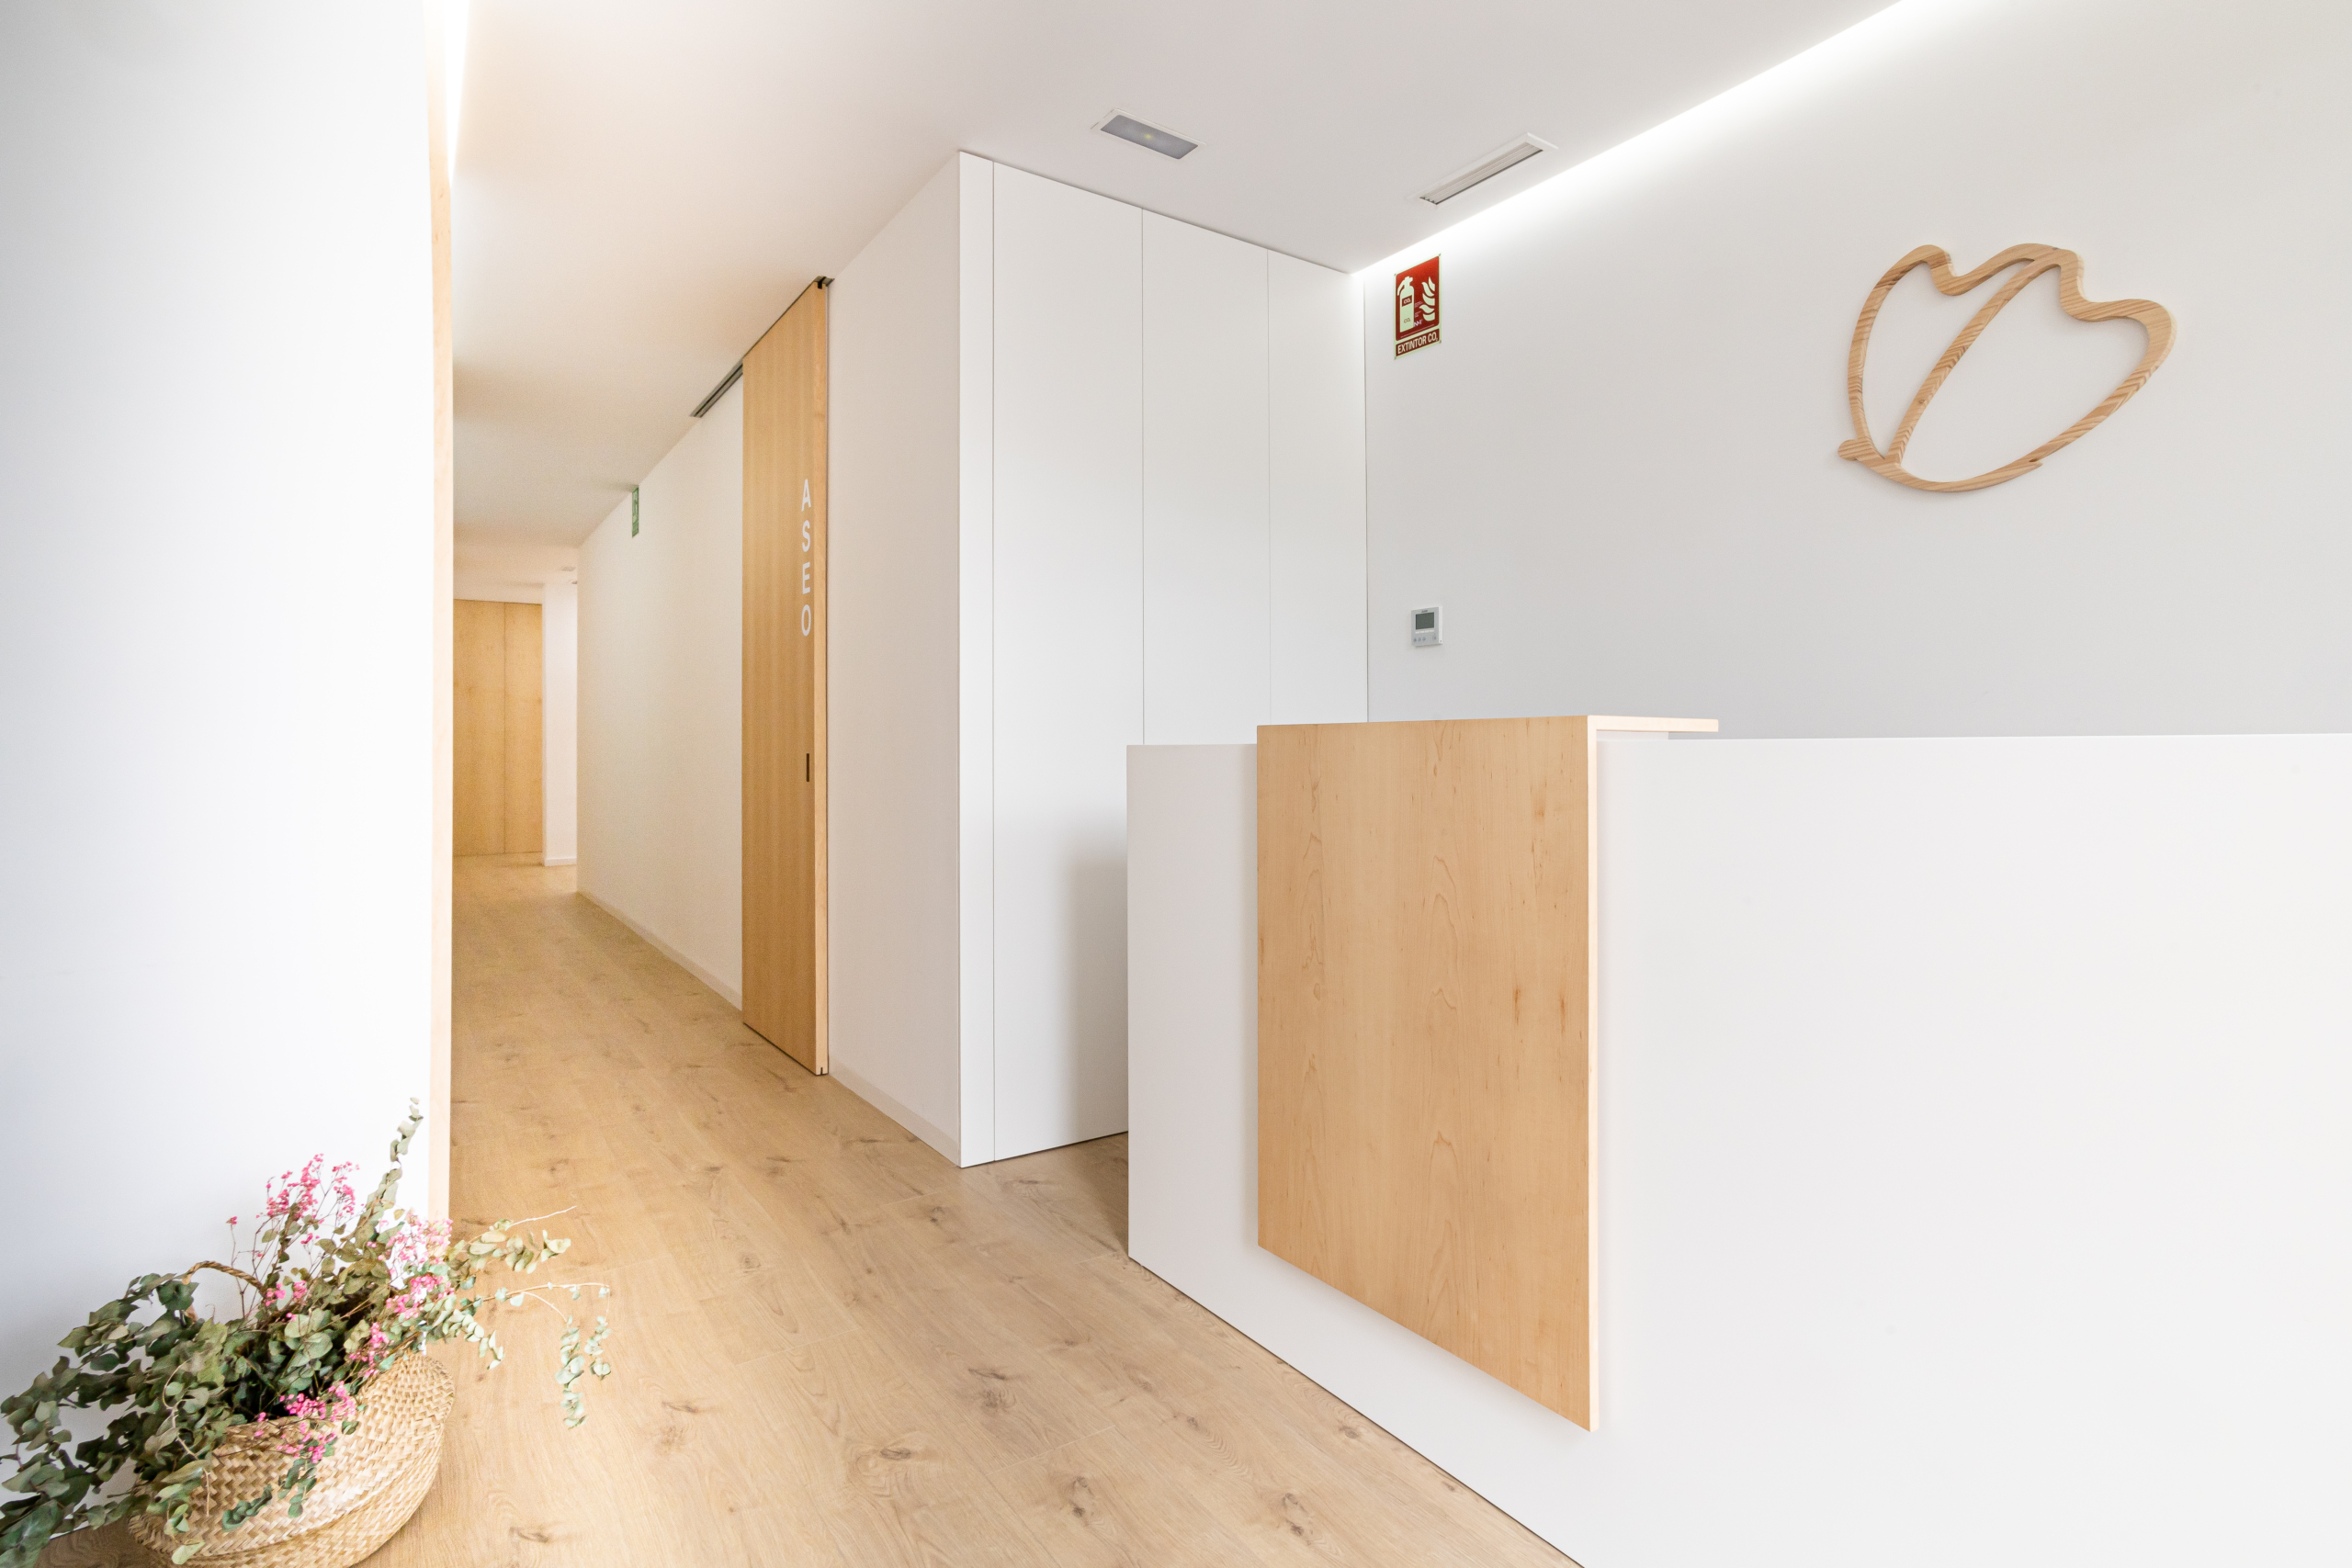 Sala de consulta con pasillo en acabado moderno, con color blanco y madera